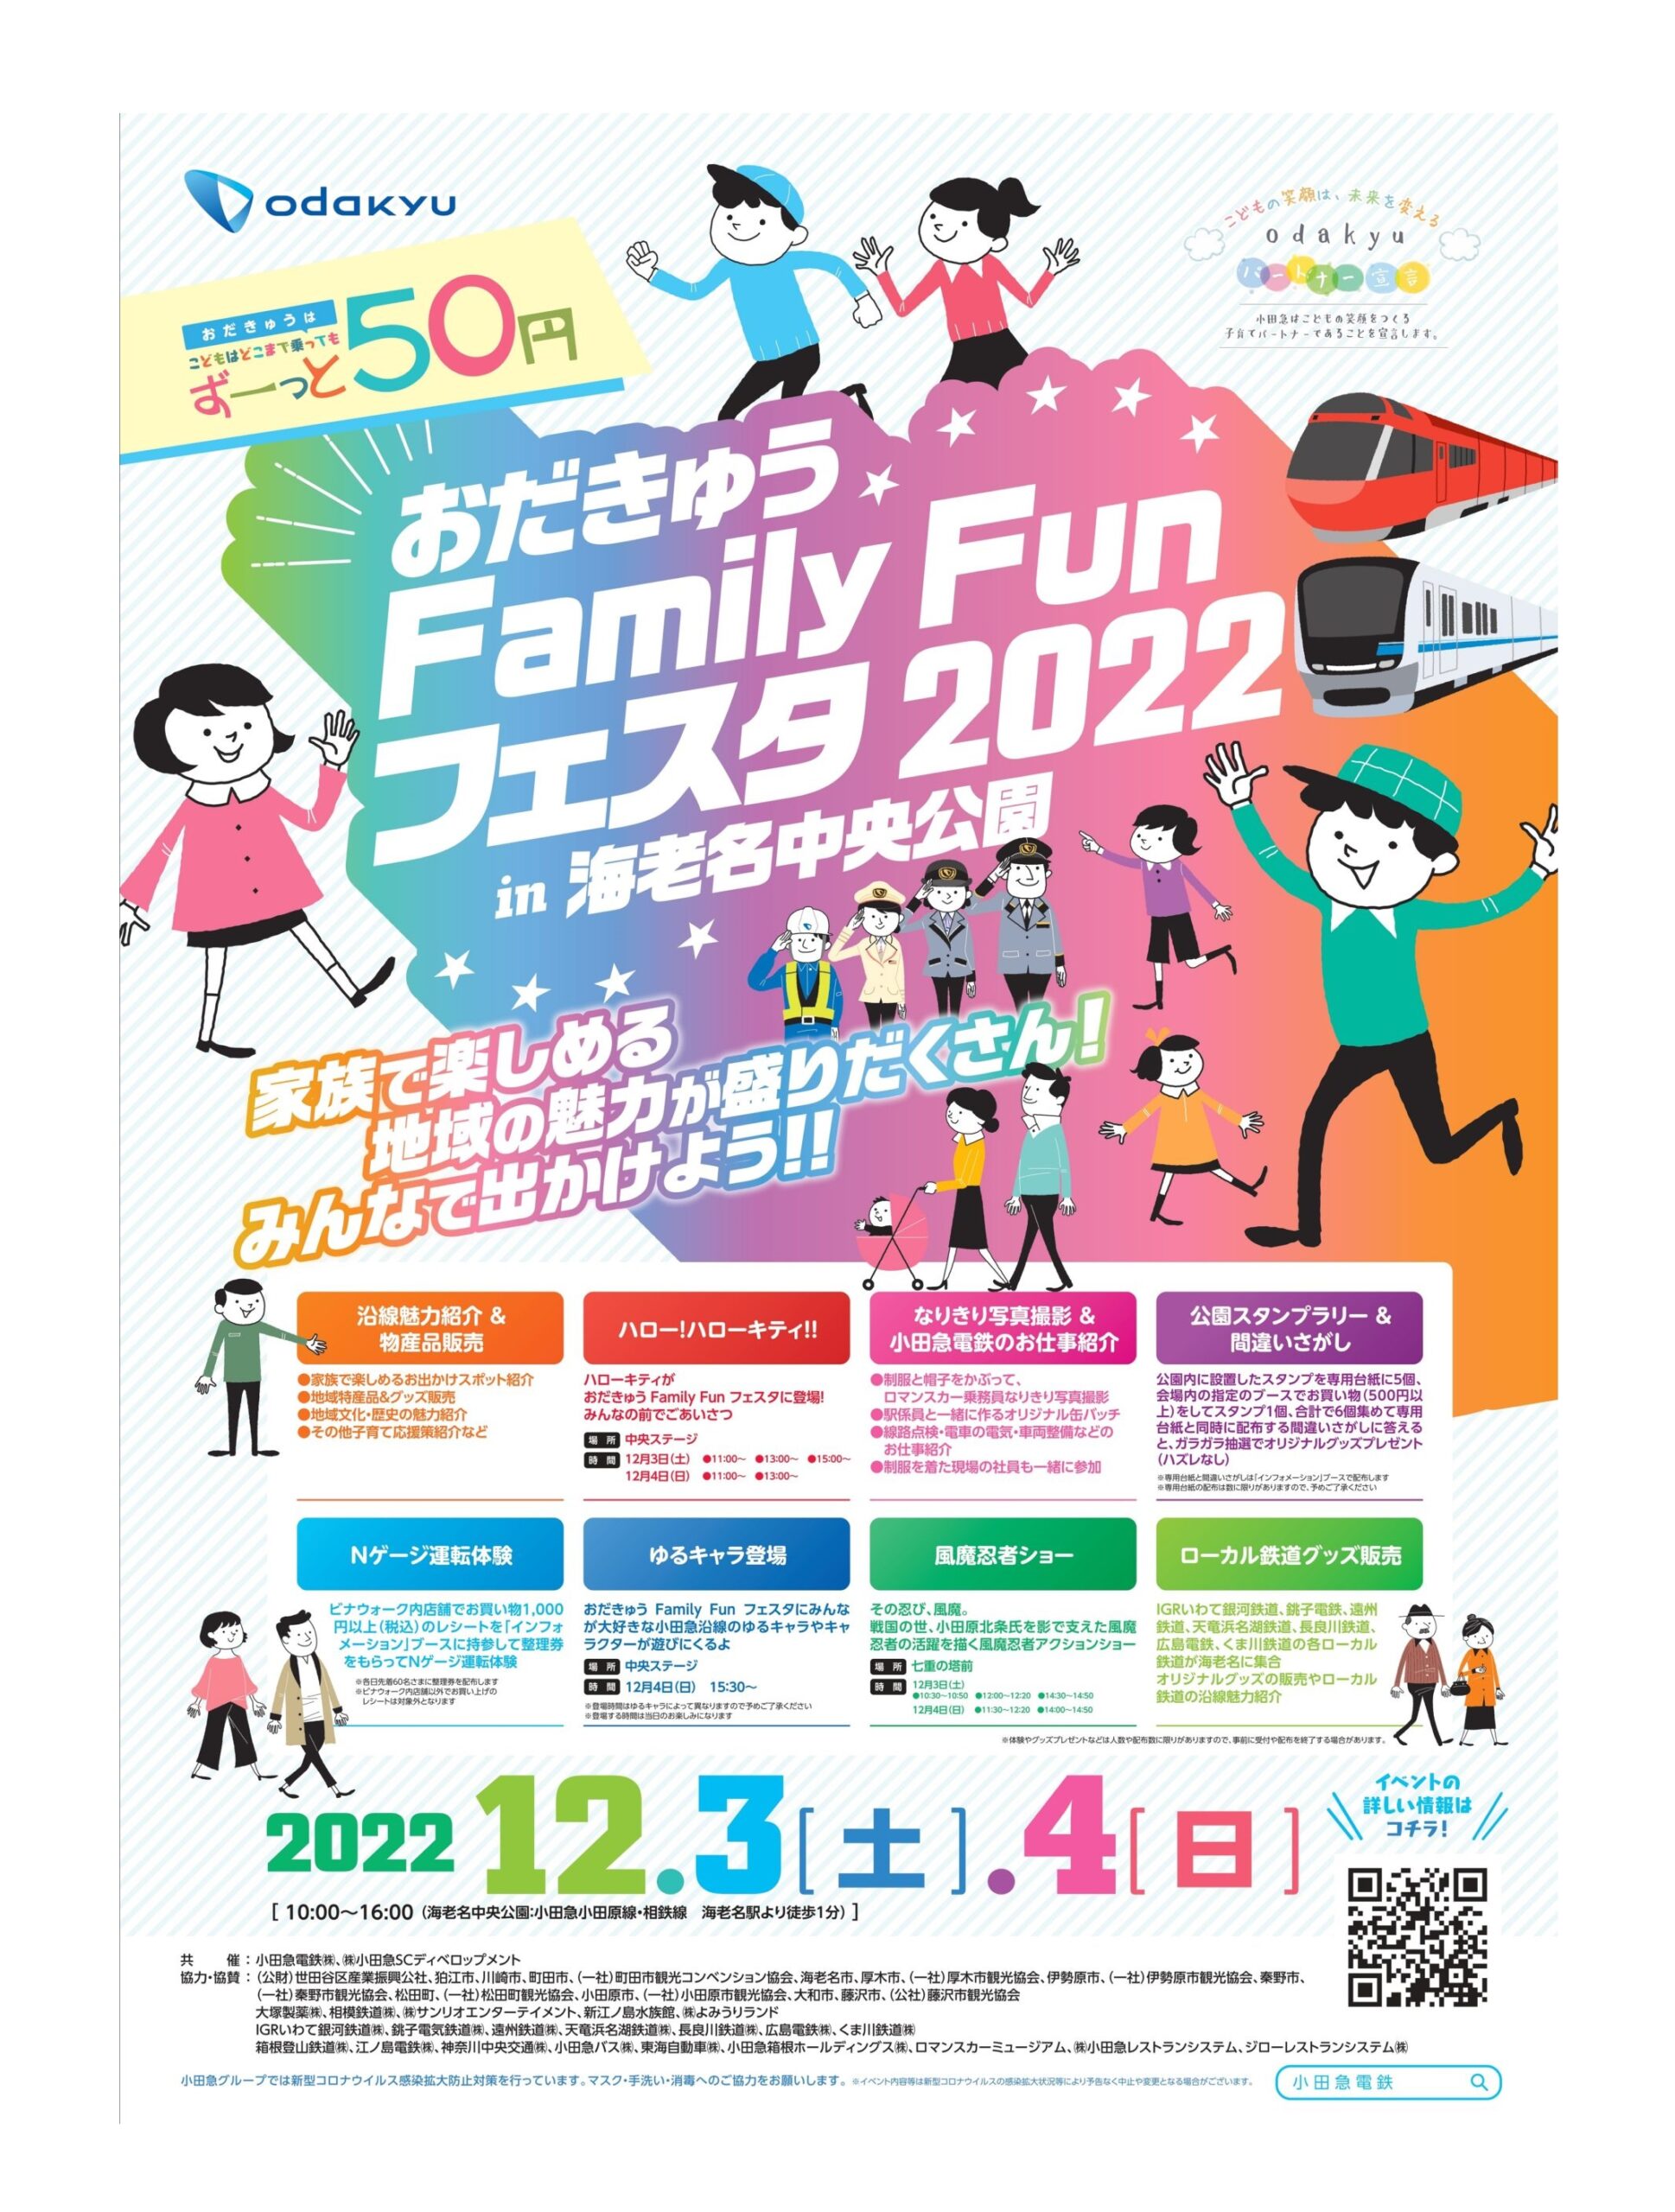 12月3、4日「おだきゅう Family Fun フェスタ2022in海老名中央公園」ローカル鉄道ブースに出店します！ 銚子電気鉄道株式会社